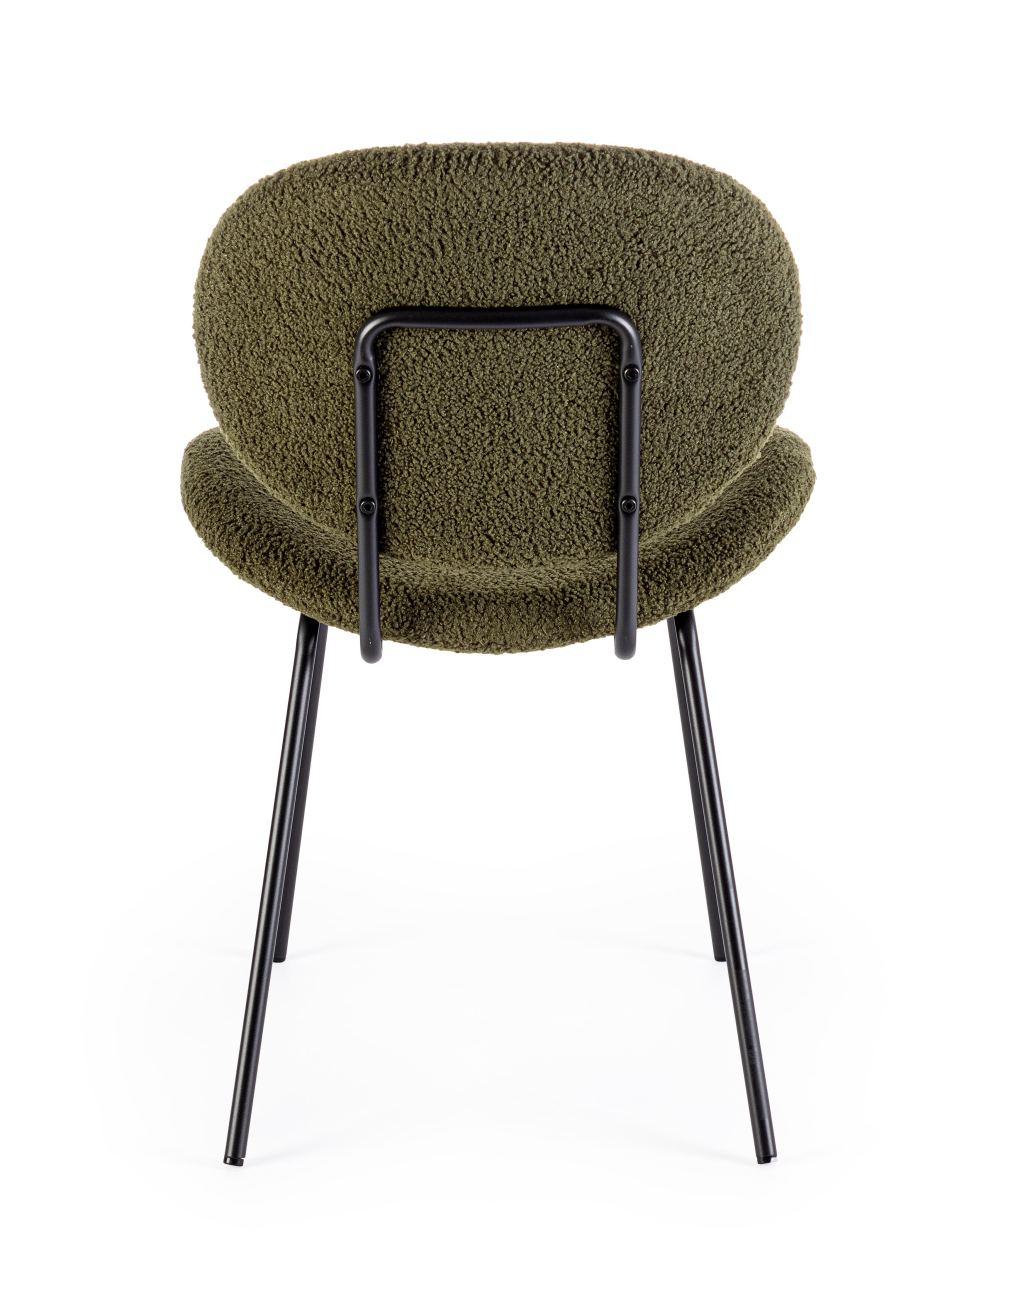 Der Esszimmerstuhl Maddie überzeugt mit seinem modernen Stil. Gefertigt wurde er aus Boucle-Stoff, welcher einen dunkelgrünen Farbton besitzt. Das Gestell ist aus Metall und hat eine schwarze Farbe. Der Stuhl besitzt eine Sitzhöhe von 46 cm.